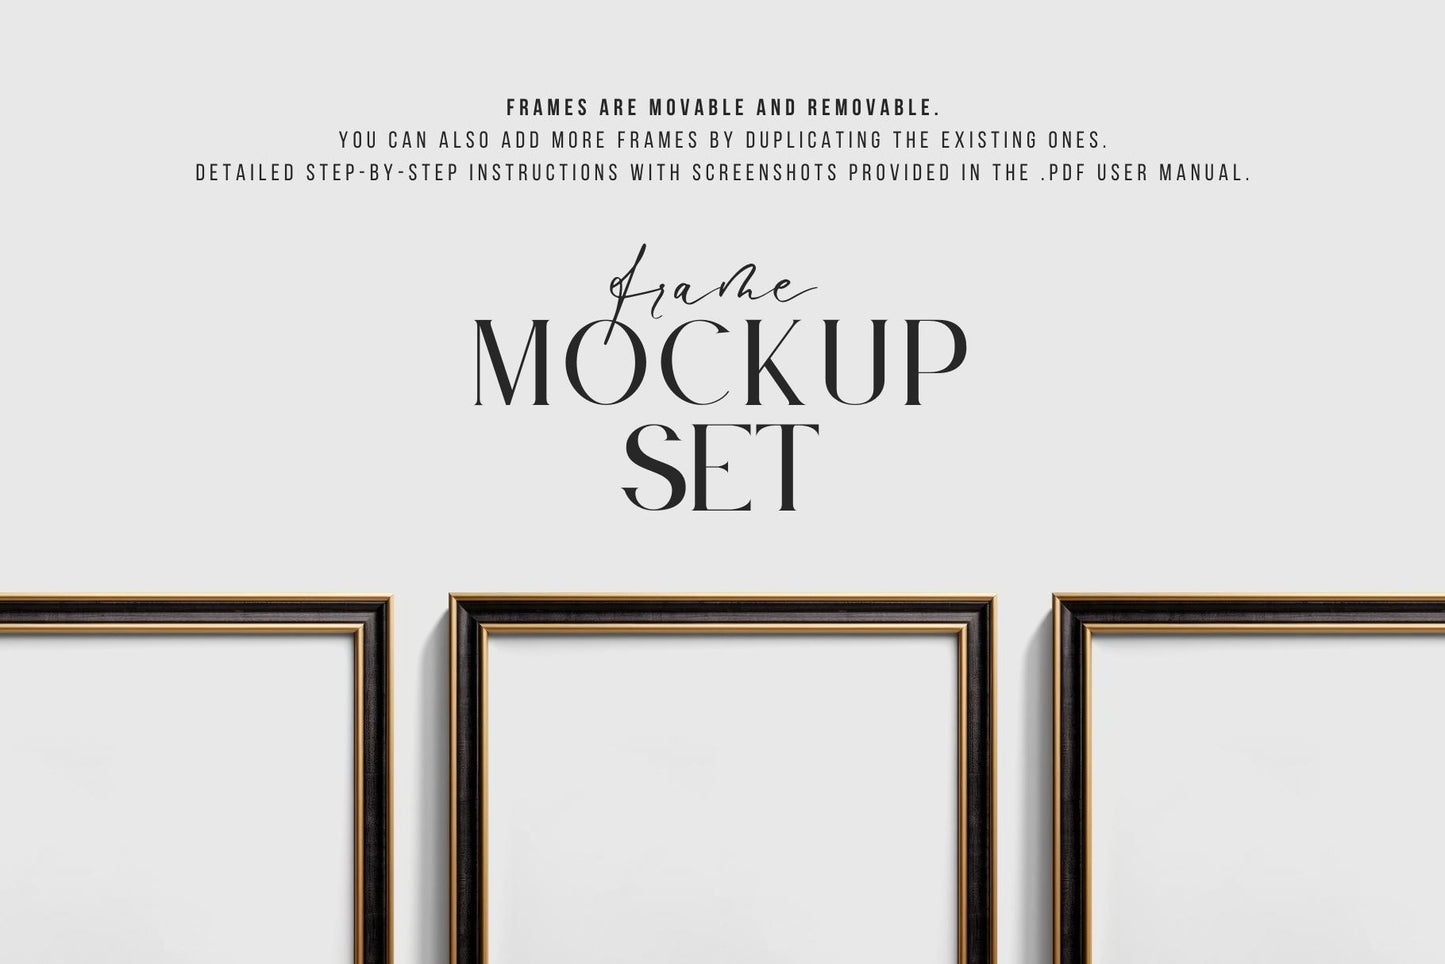 Metallic Frame Mockup Set of 6 Square Frames 1:1 | Elegant Black and Gold Frame Mockup Set | PSD Template + Transparent PNG Files